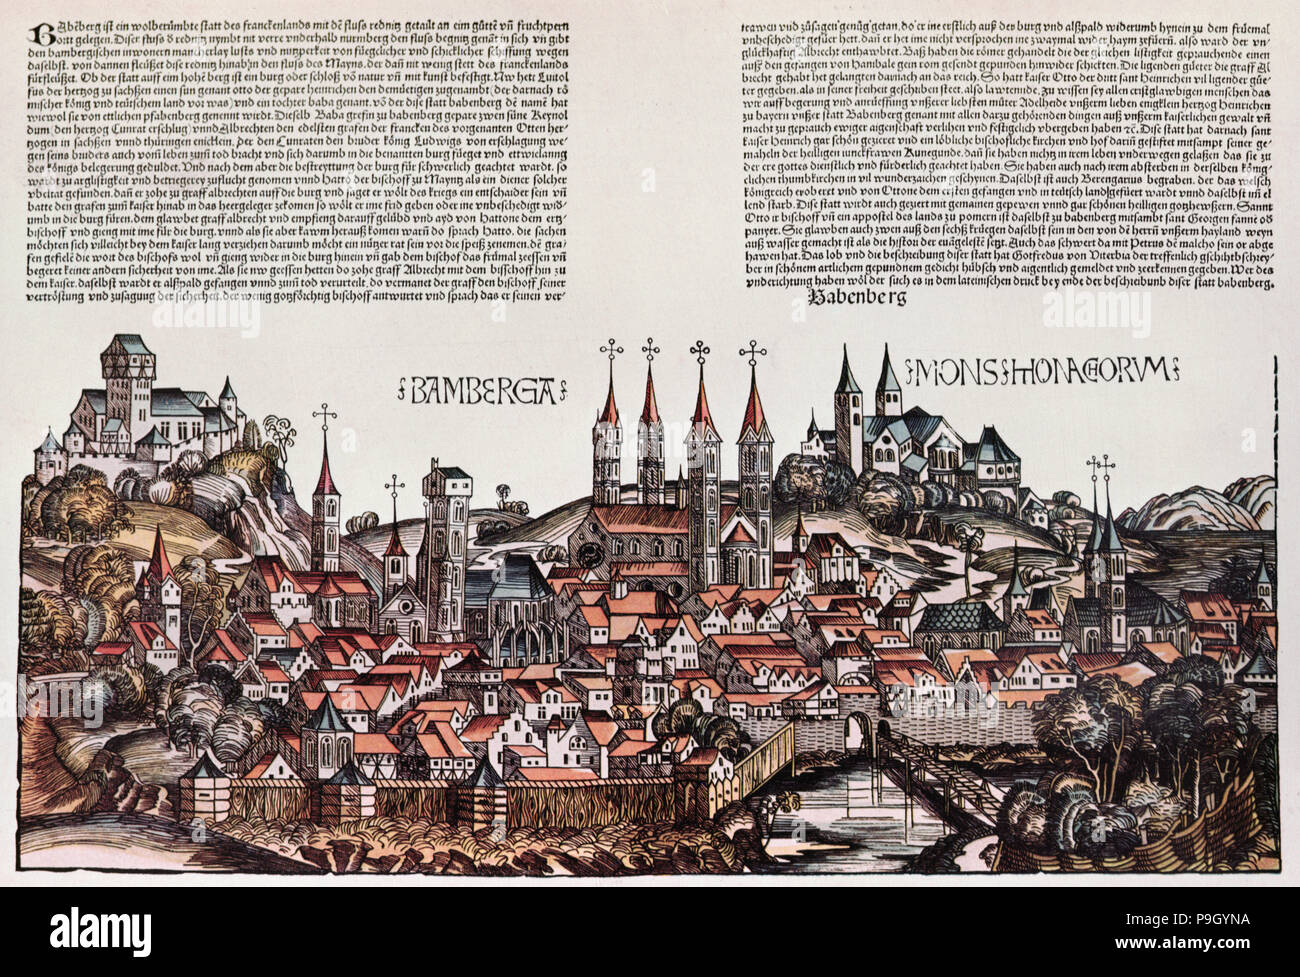 La ciudad de Bamberg, xilografía coloreada en 'Chronicarum', de 1493. Foto de stock